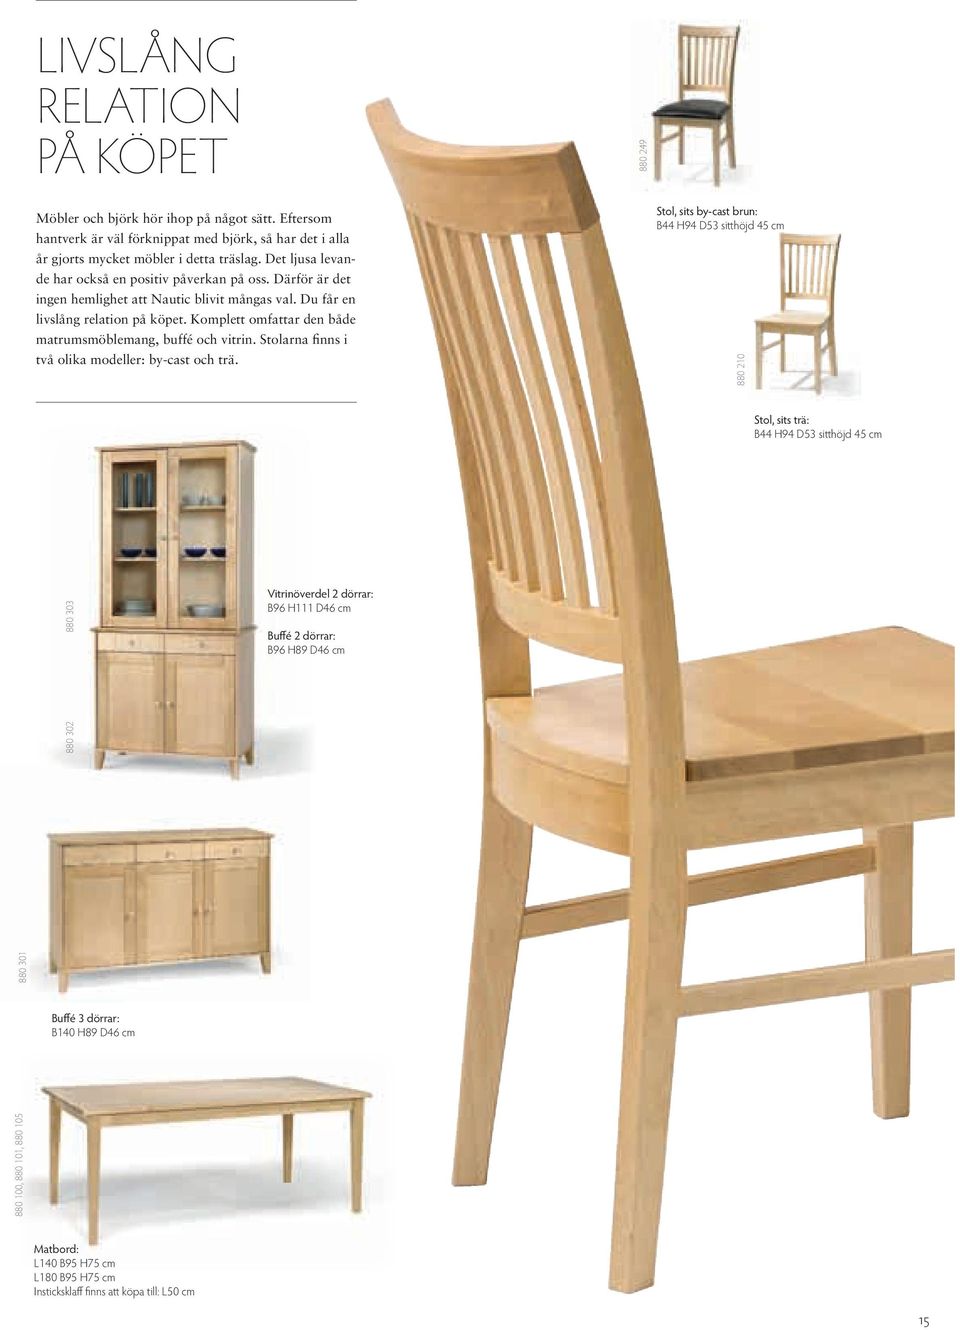 Komplett omfattar den både matrumsmöblemang, buffé och vitrin. Stolarna finns i två olika modeller: by-cast och trä.